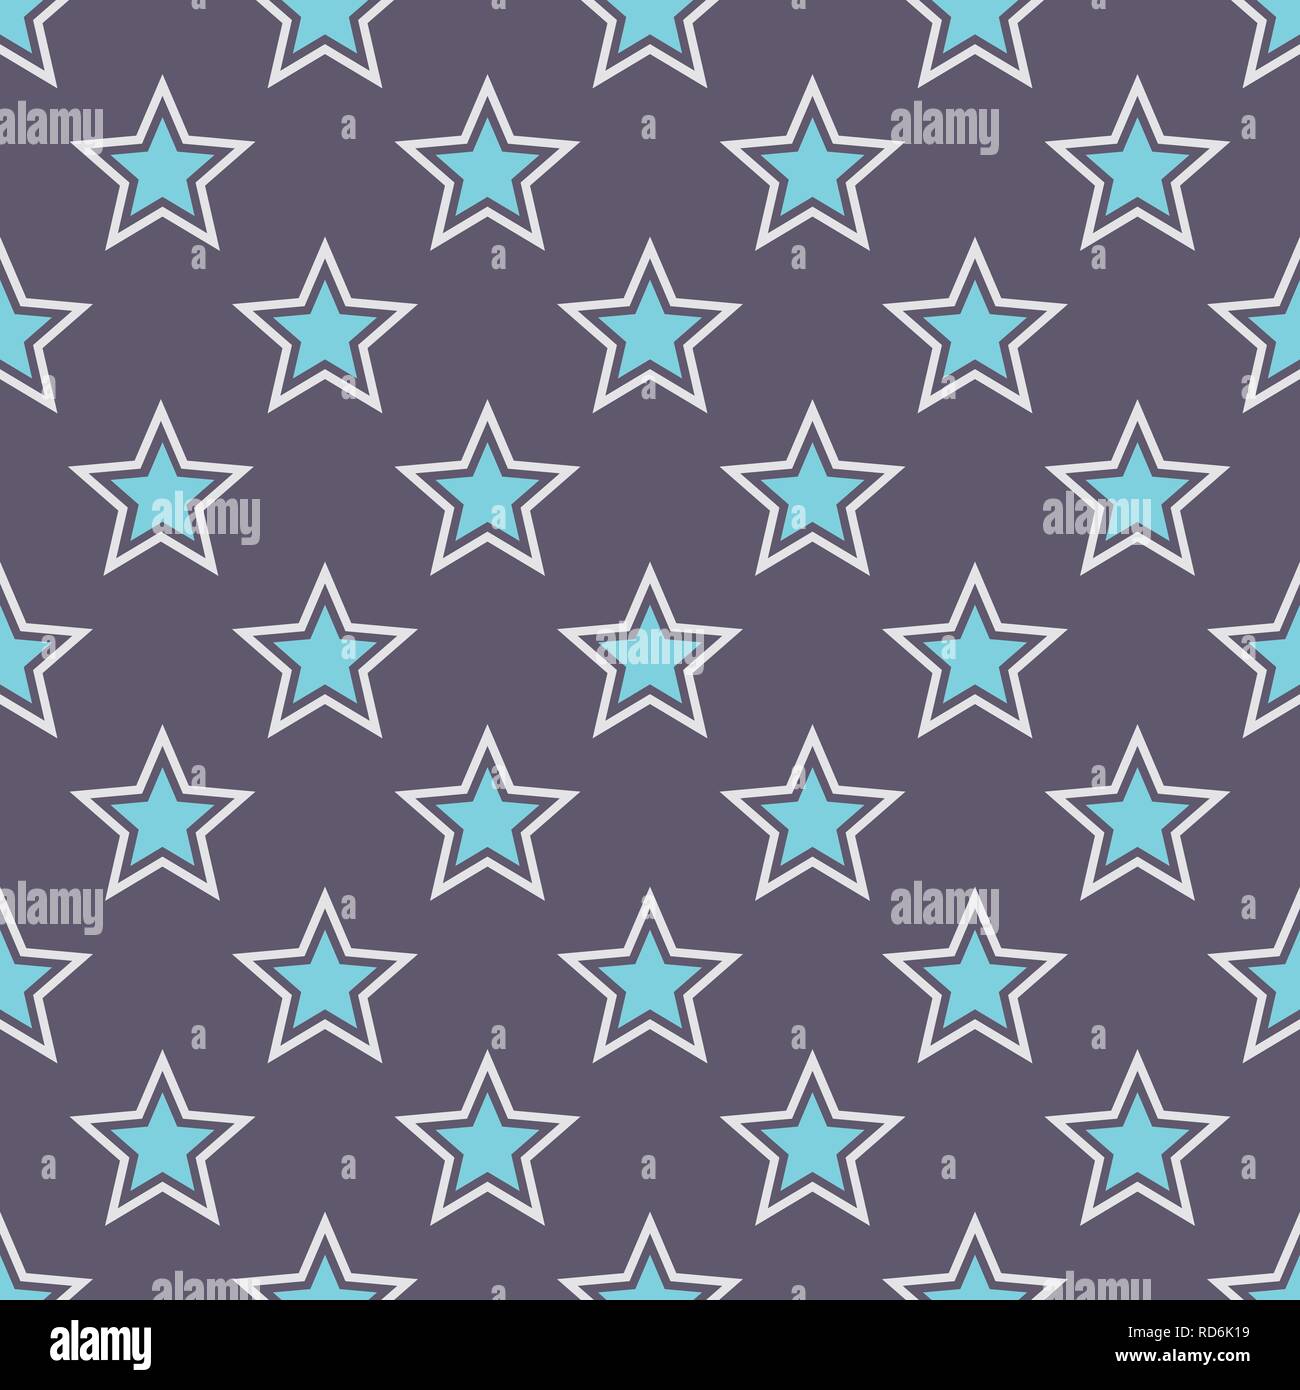 Zusammenfassung nahtlose Sterne Muster. Elegante Textur. Regelmäßig wiederkehrende geometrische Fliesen. Vector Farbe Hintergrund. Stock Vektor